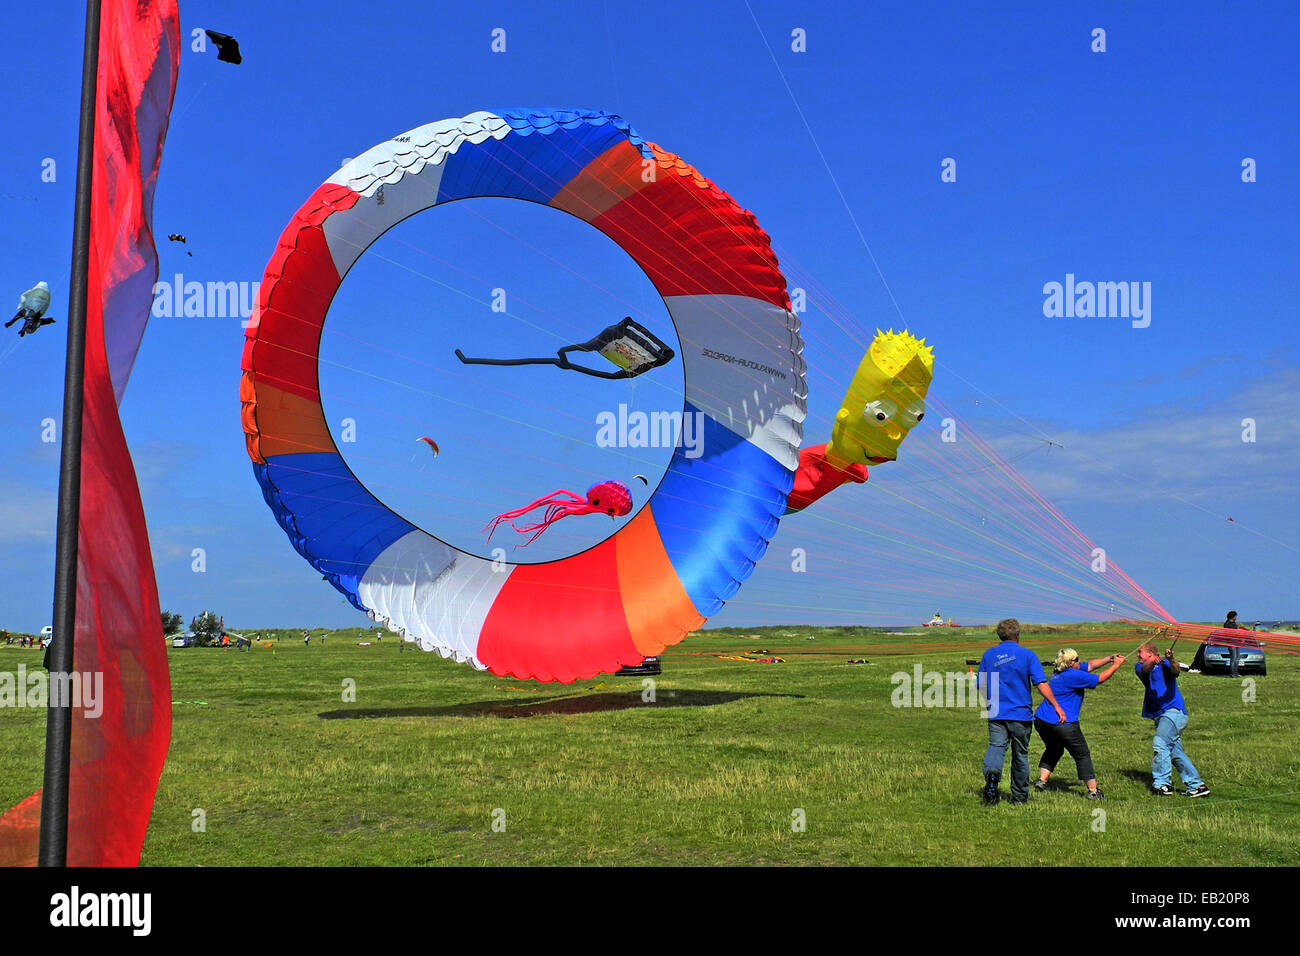 Kite festival on the beach in Schillig Stock Photo